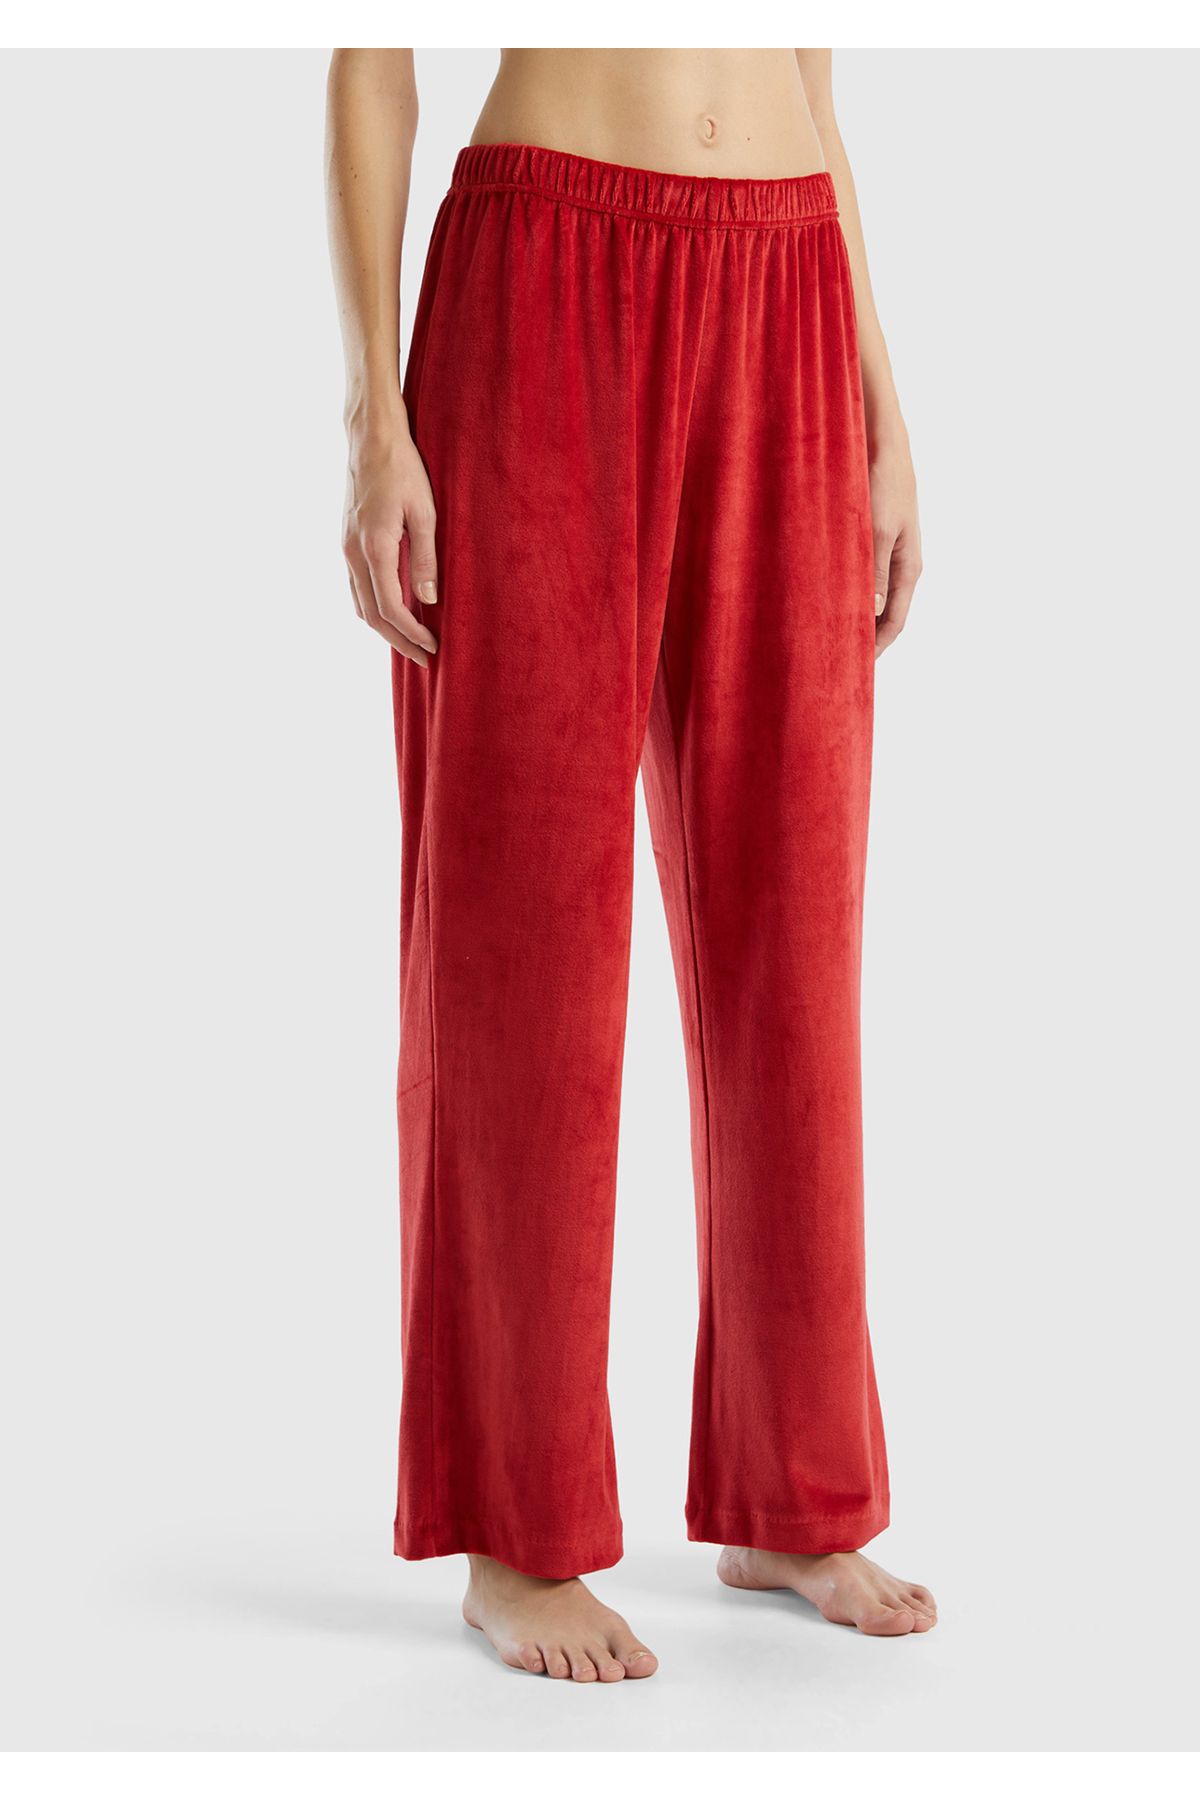 United Colors of Benetton Kadın Kırmızı Geniş Paçalı Pijama Alt